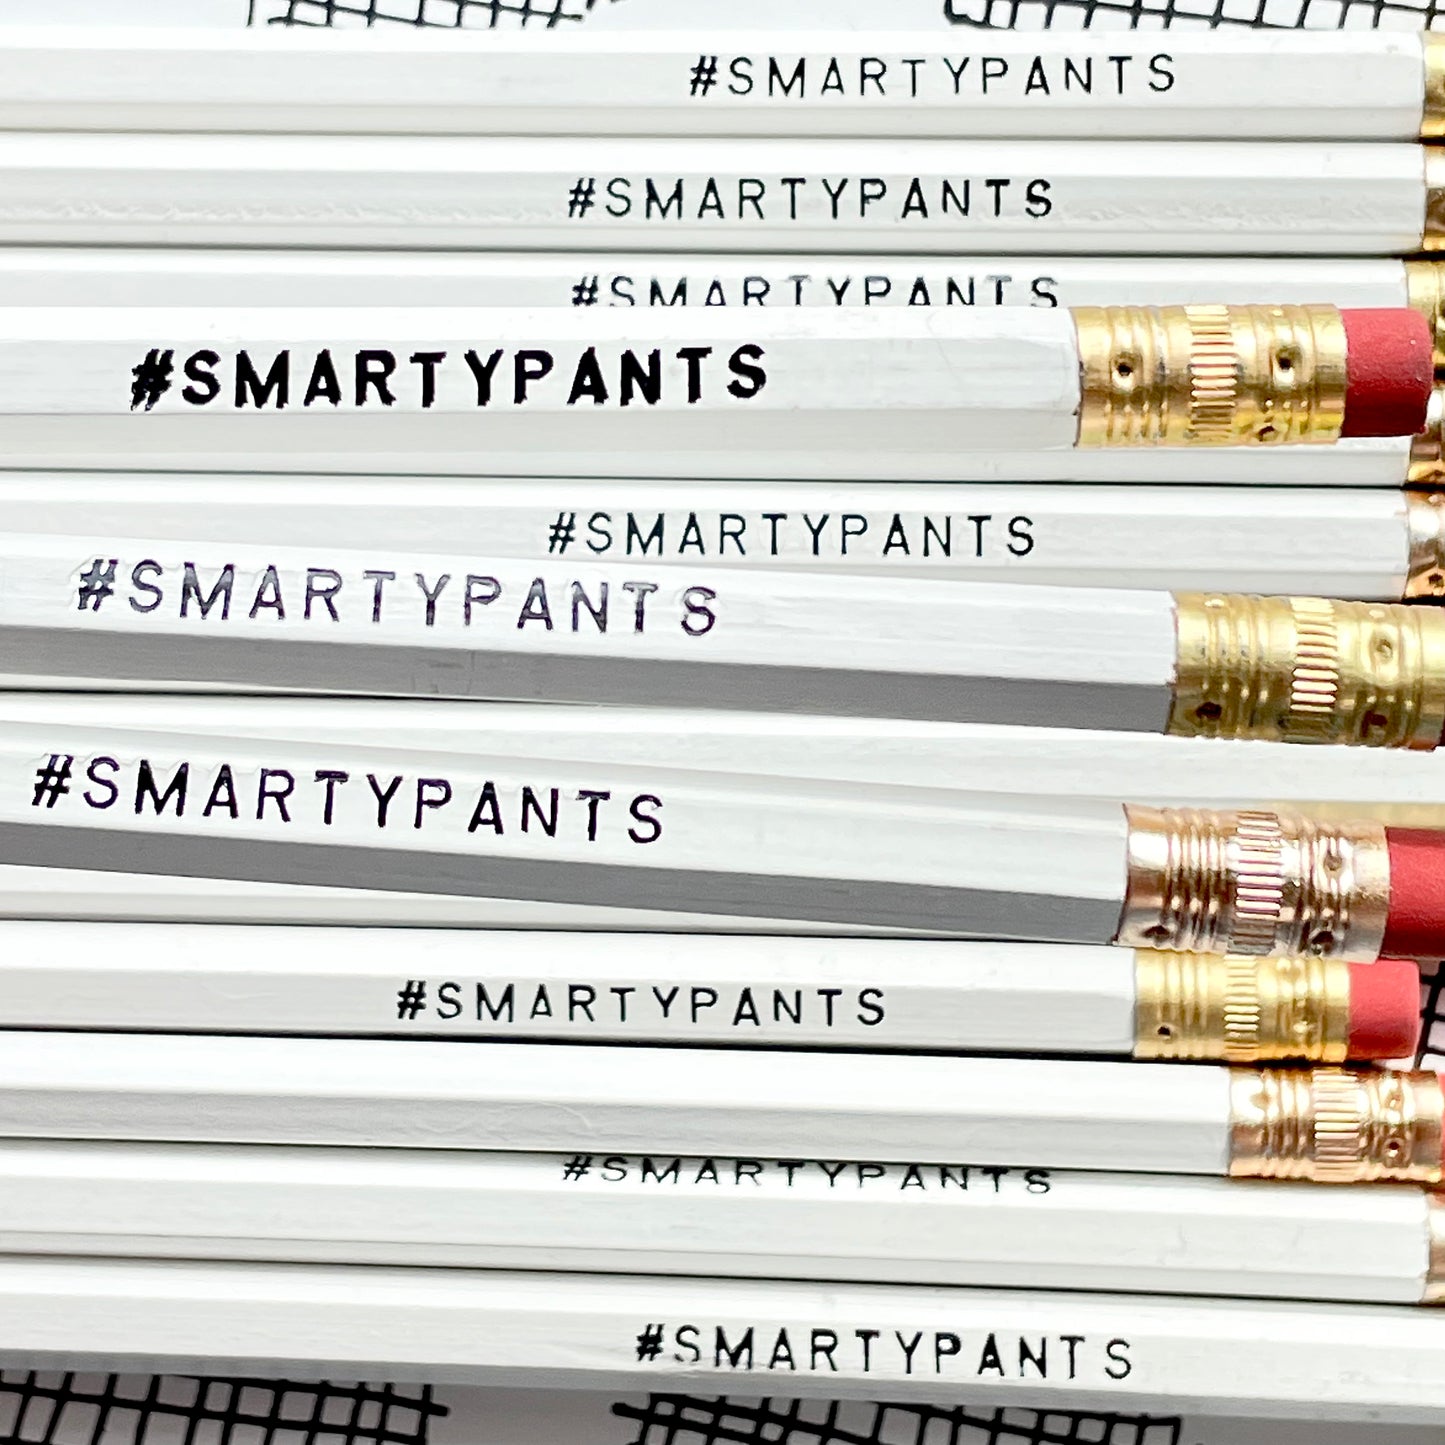 LESS THAN PERFECT PENCILS - #SMARTYPANTS PENCIL SET